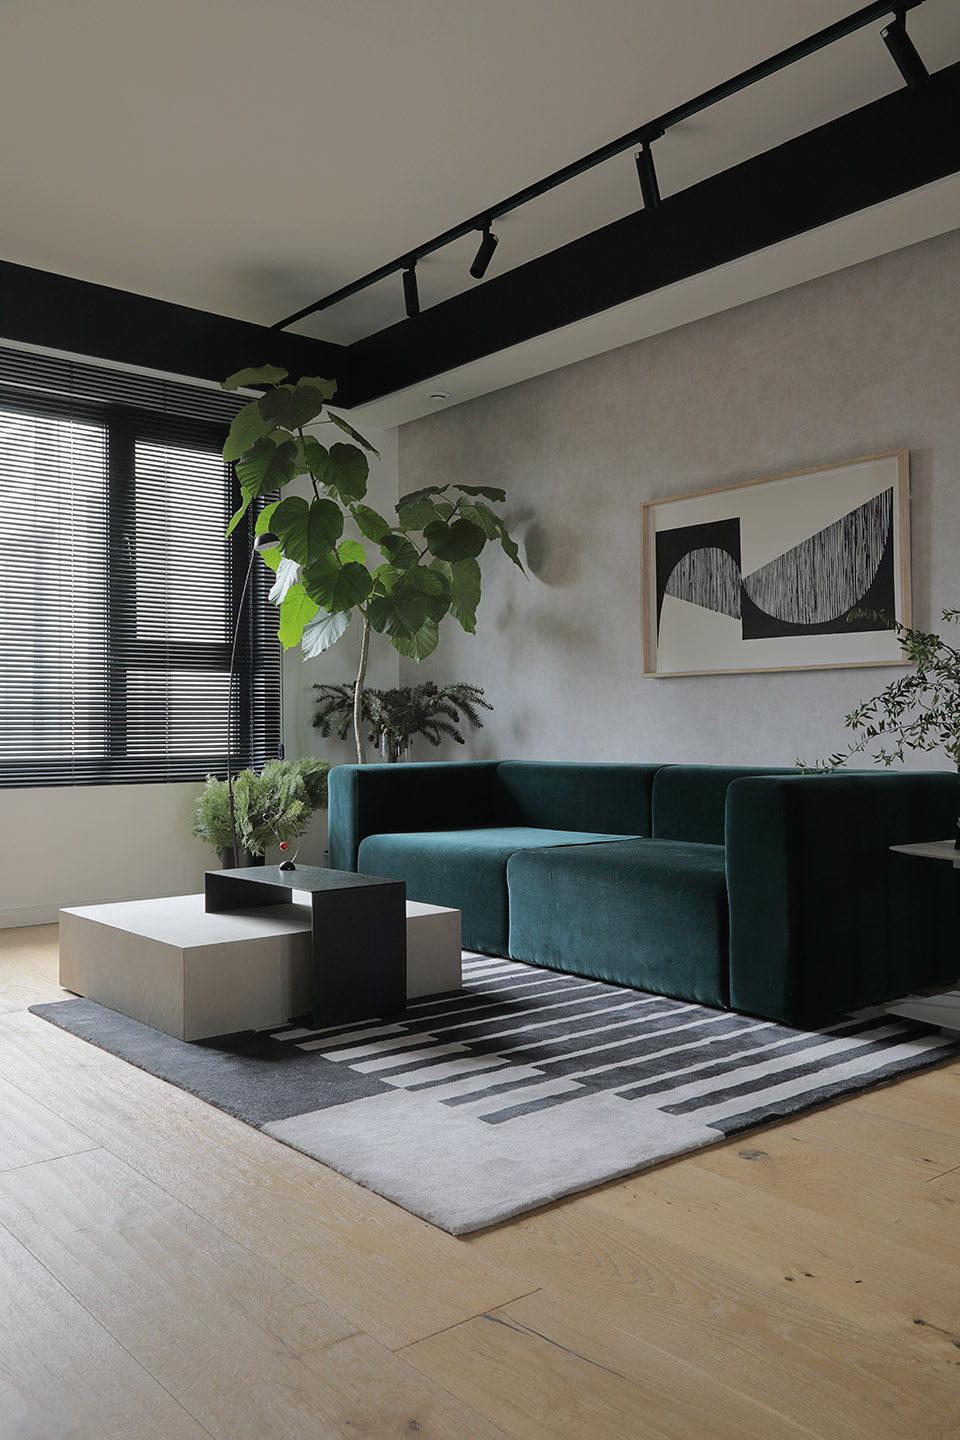 绿色丝绒质沙发搭配白蜡木小茶几，局部使用绿植装饰，将日式风进行到底。